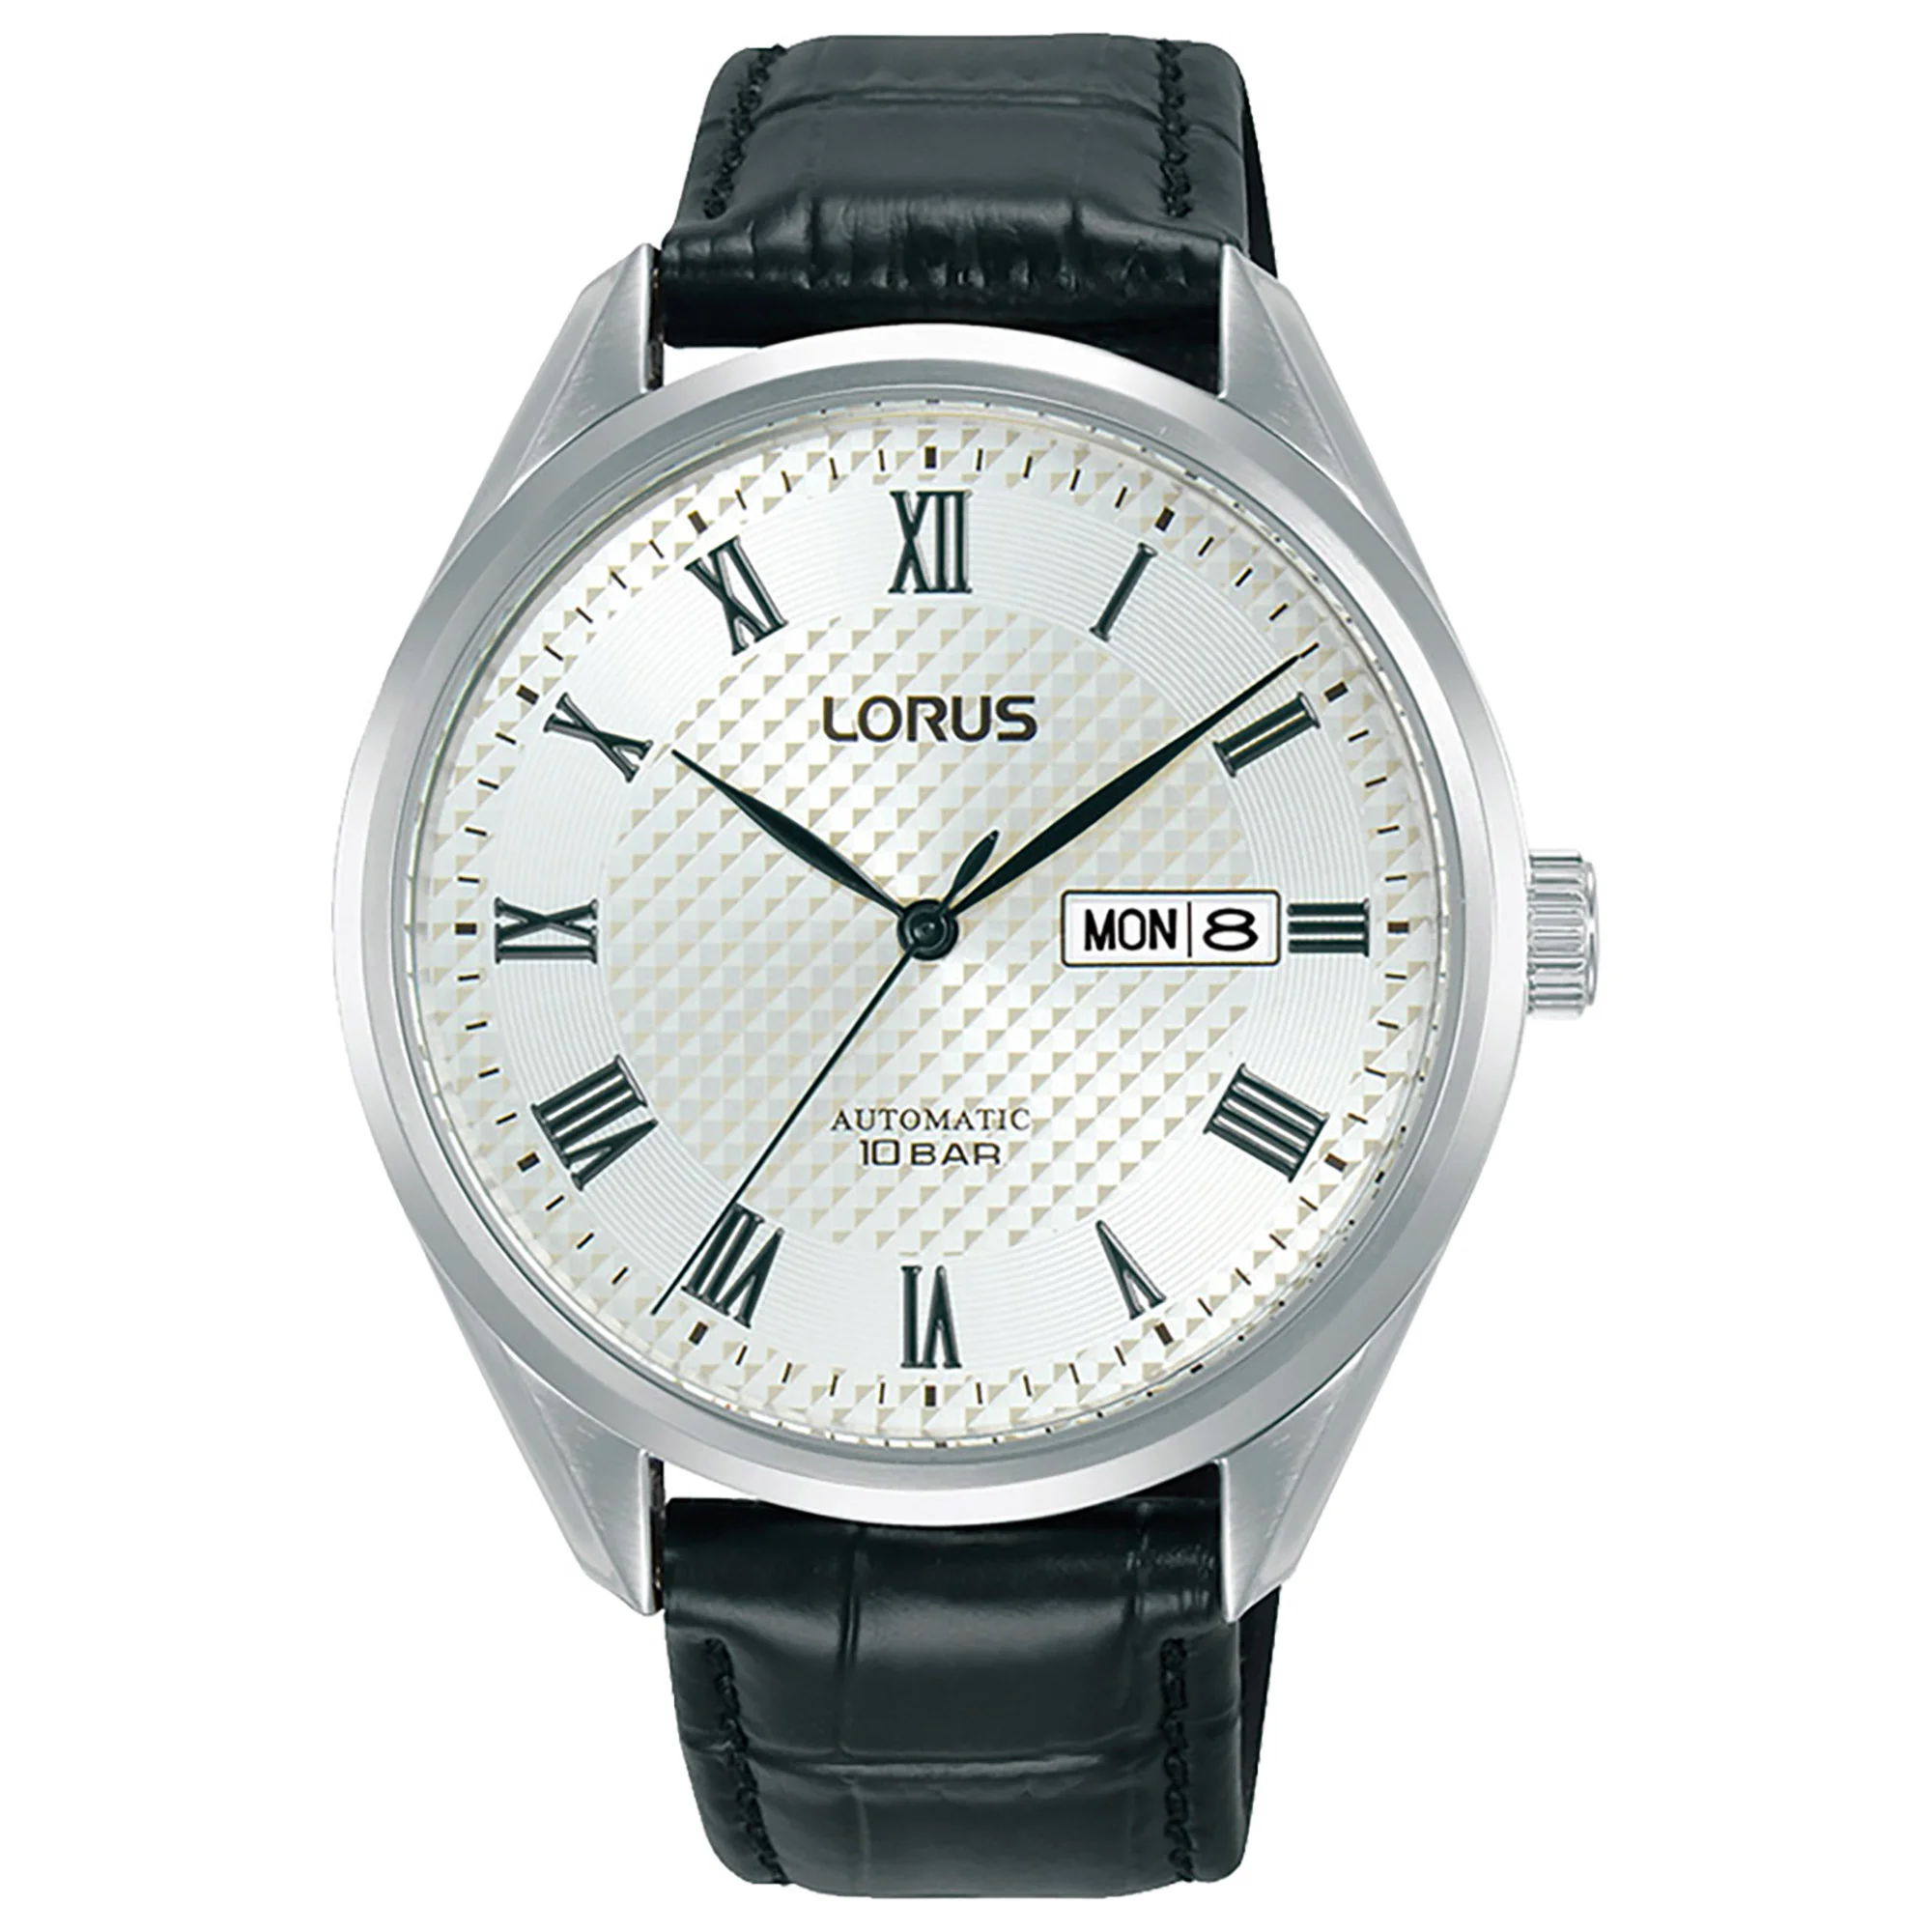 Watch Lorus rl437bx9